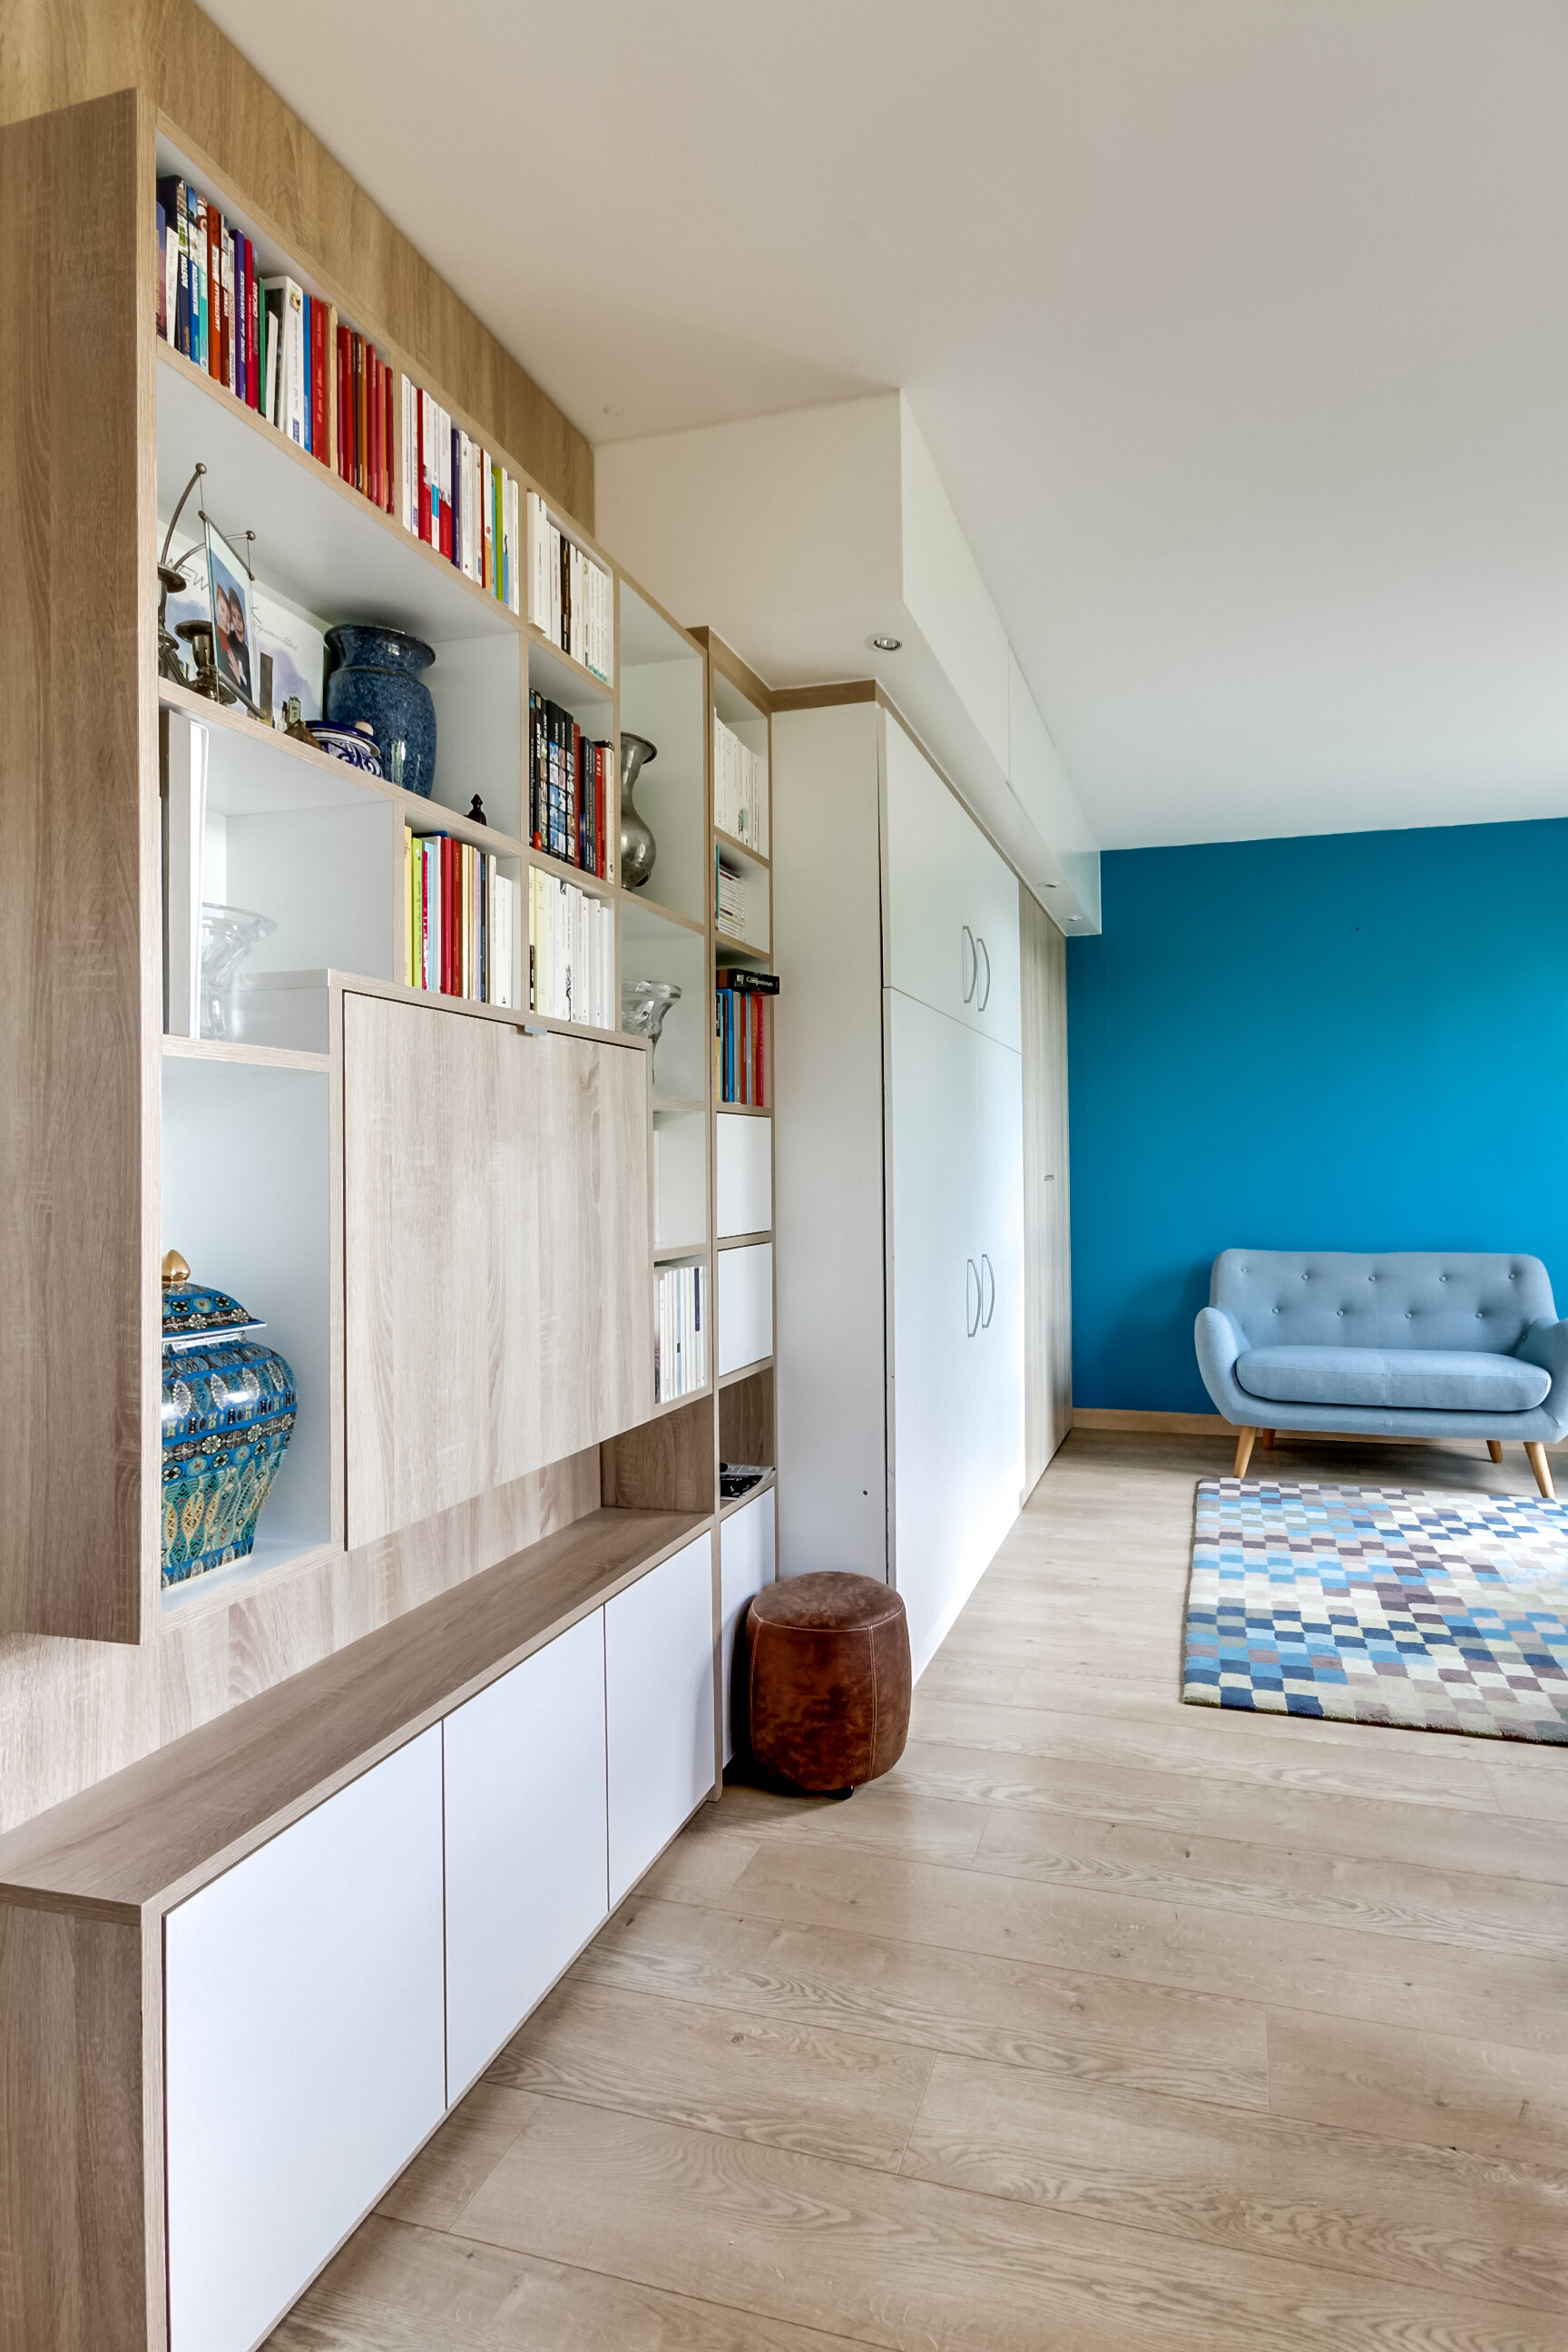 architecte-intérieur-décoration-mobilier sur mesure-bibliothèque coulissante-modulable-coin salon-bleu-paris.jpg